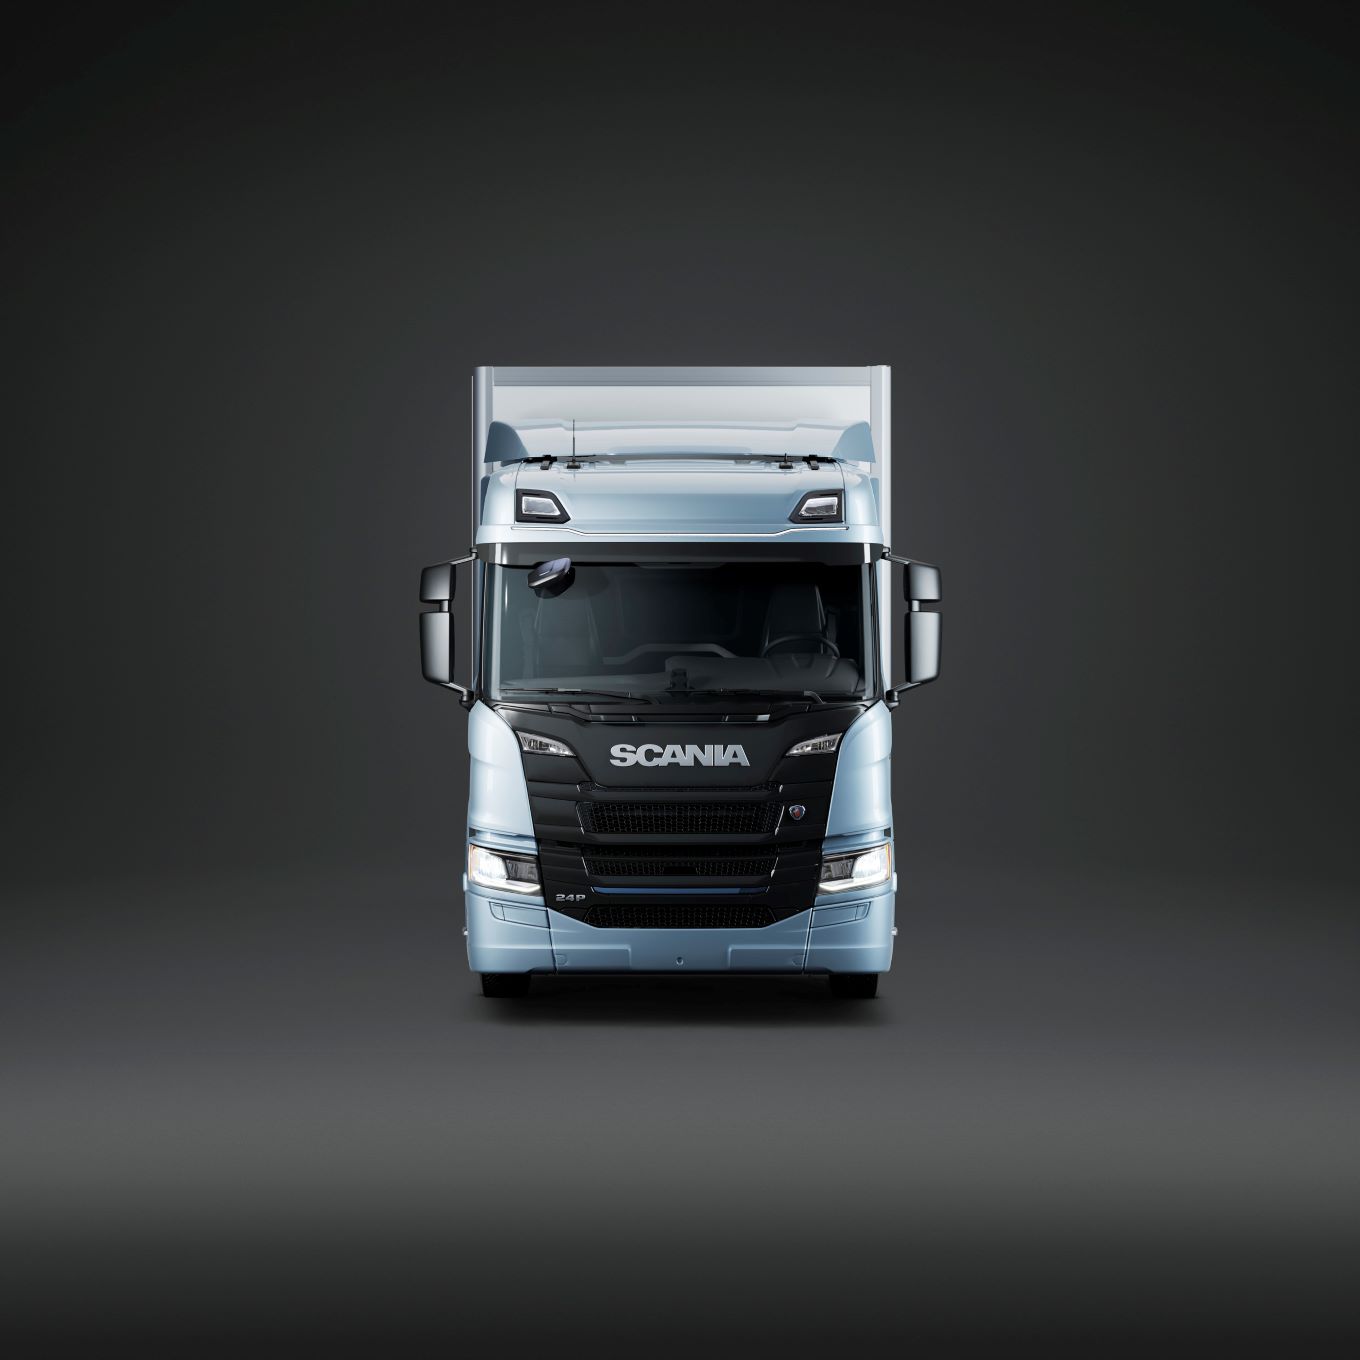 Scania amplía su gama de camiones eléctricos